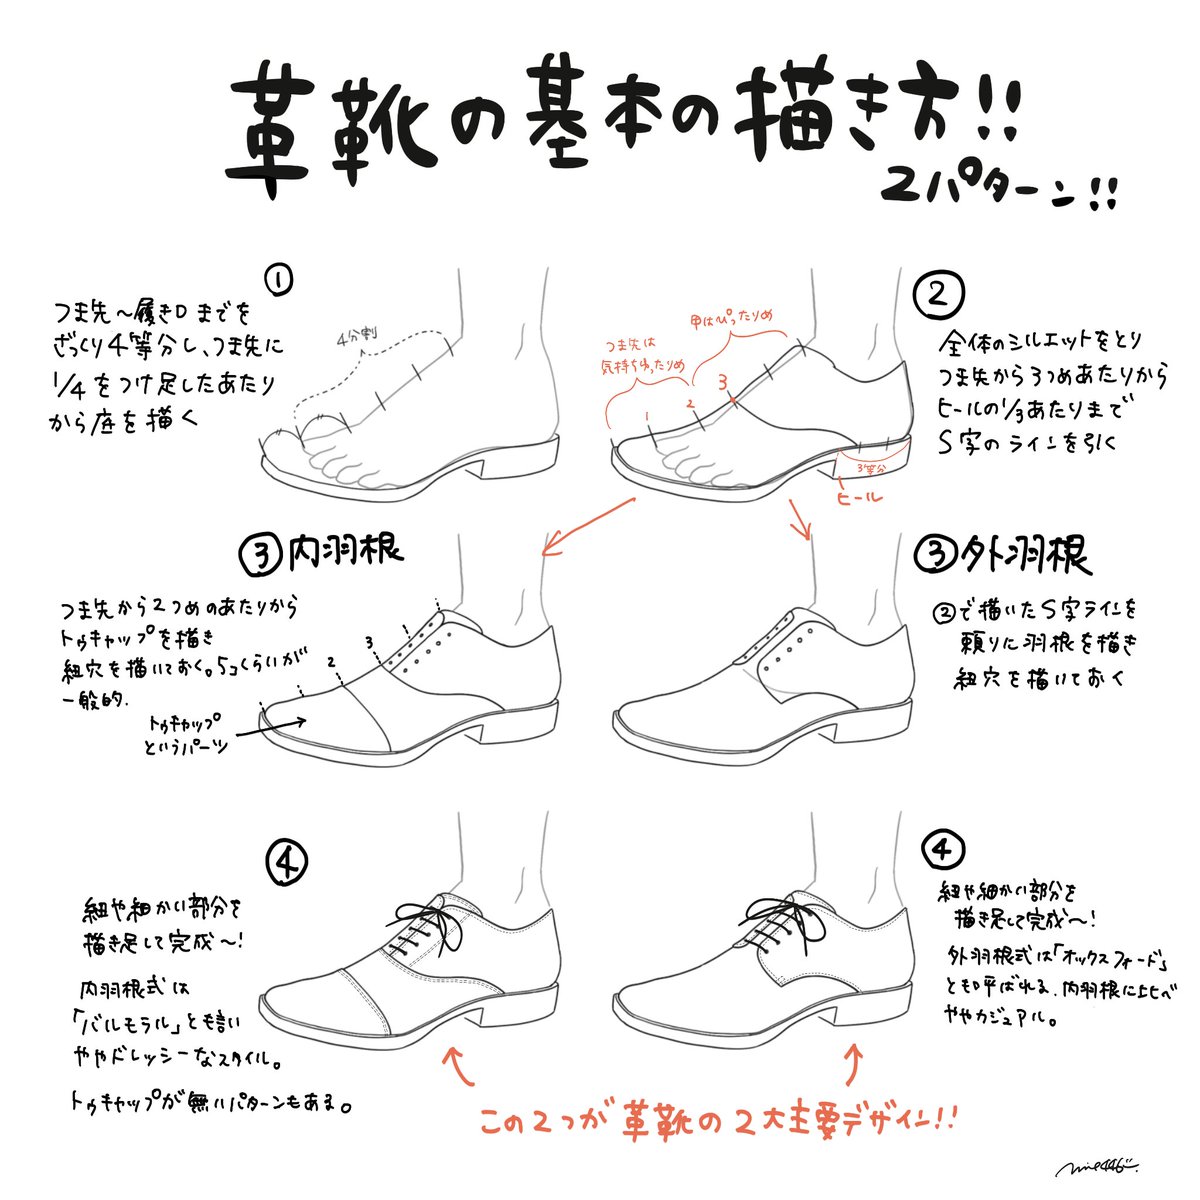 革靴の基本の描き方～
大きく分けると「内羽根」と「外羽根」があります👞
つま先を長めに描くとシュッとしてスマートになります～✨
#靴の描き方tips 